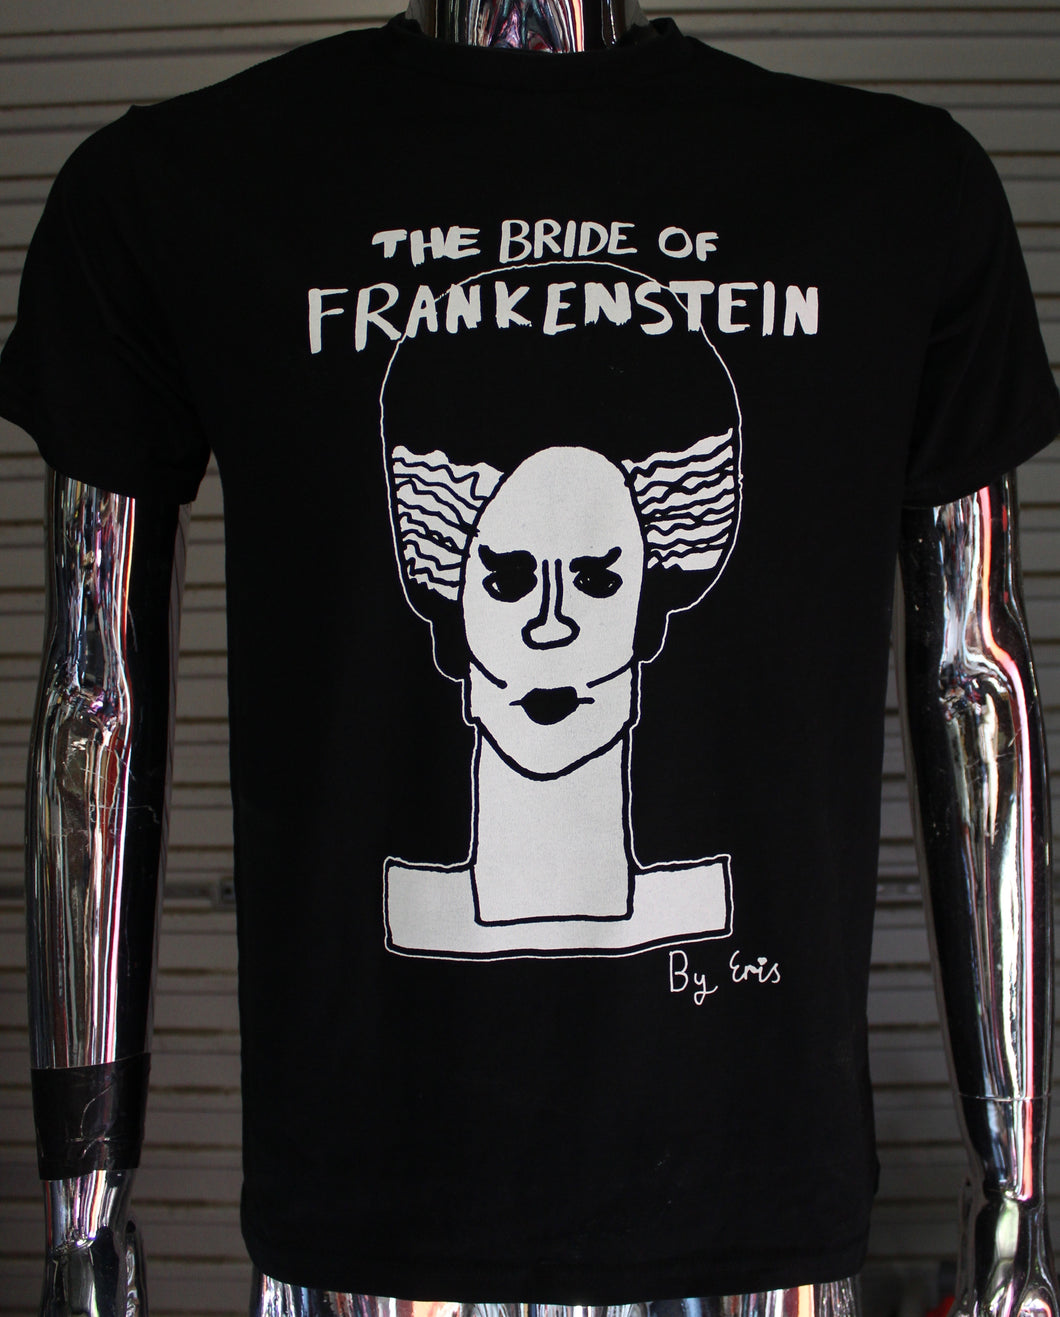 The Bride of Frankenstein by Eris T-shirt